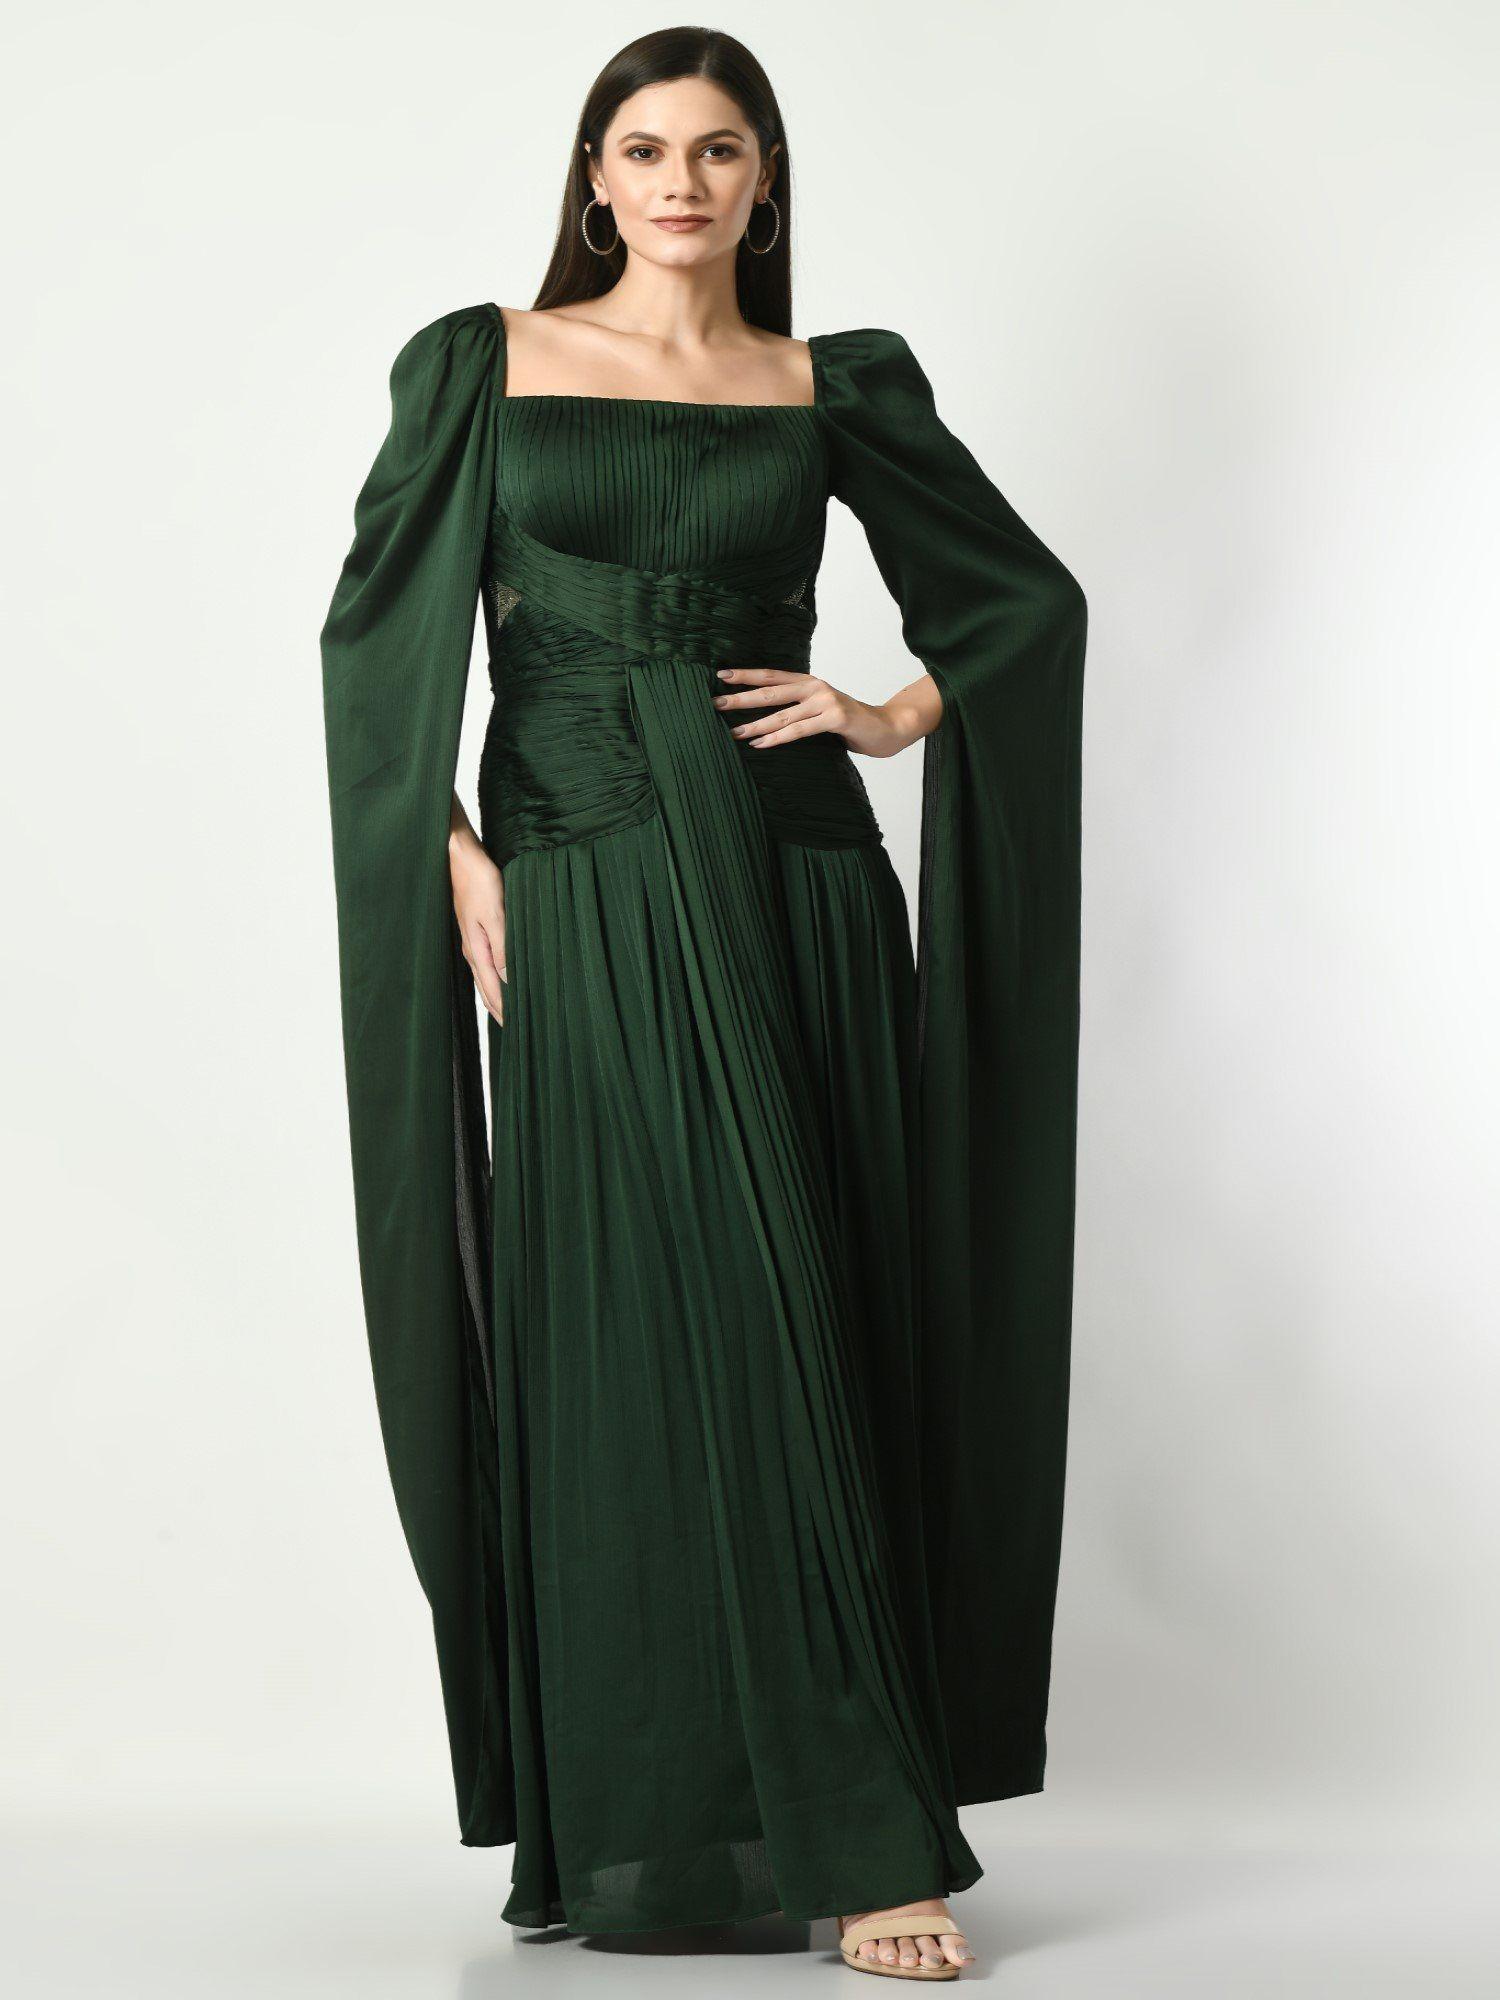 unspoken beauty - ruching gown in bottle green color